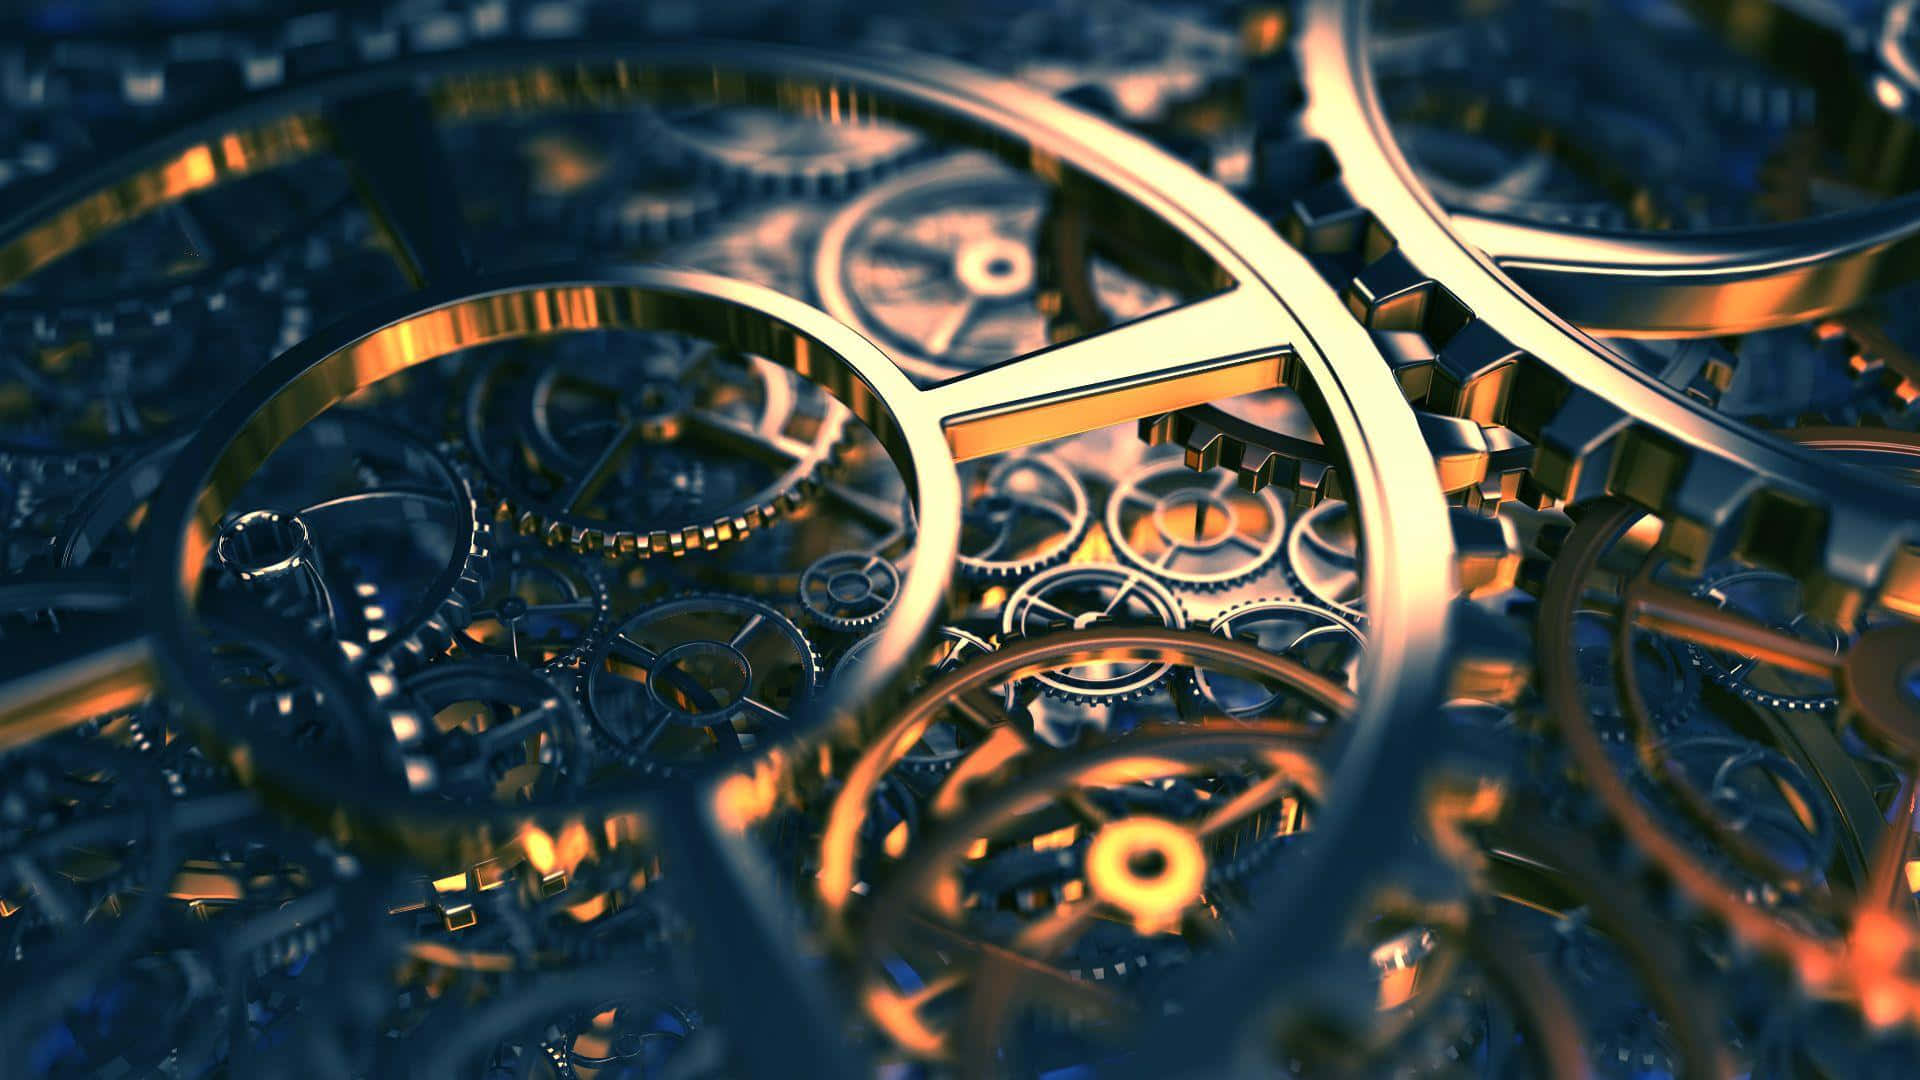 Intricate Golden Gears Mechanism Wallpaper